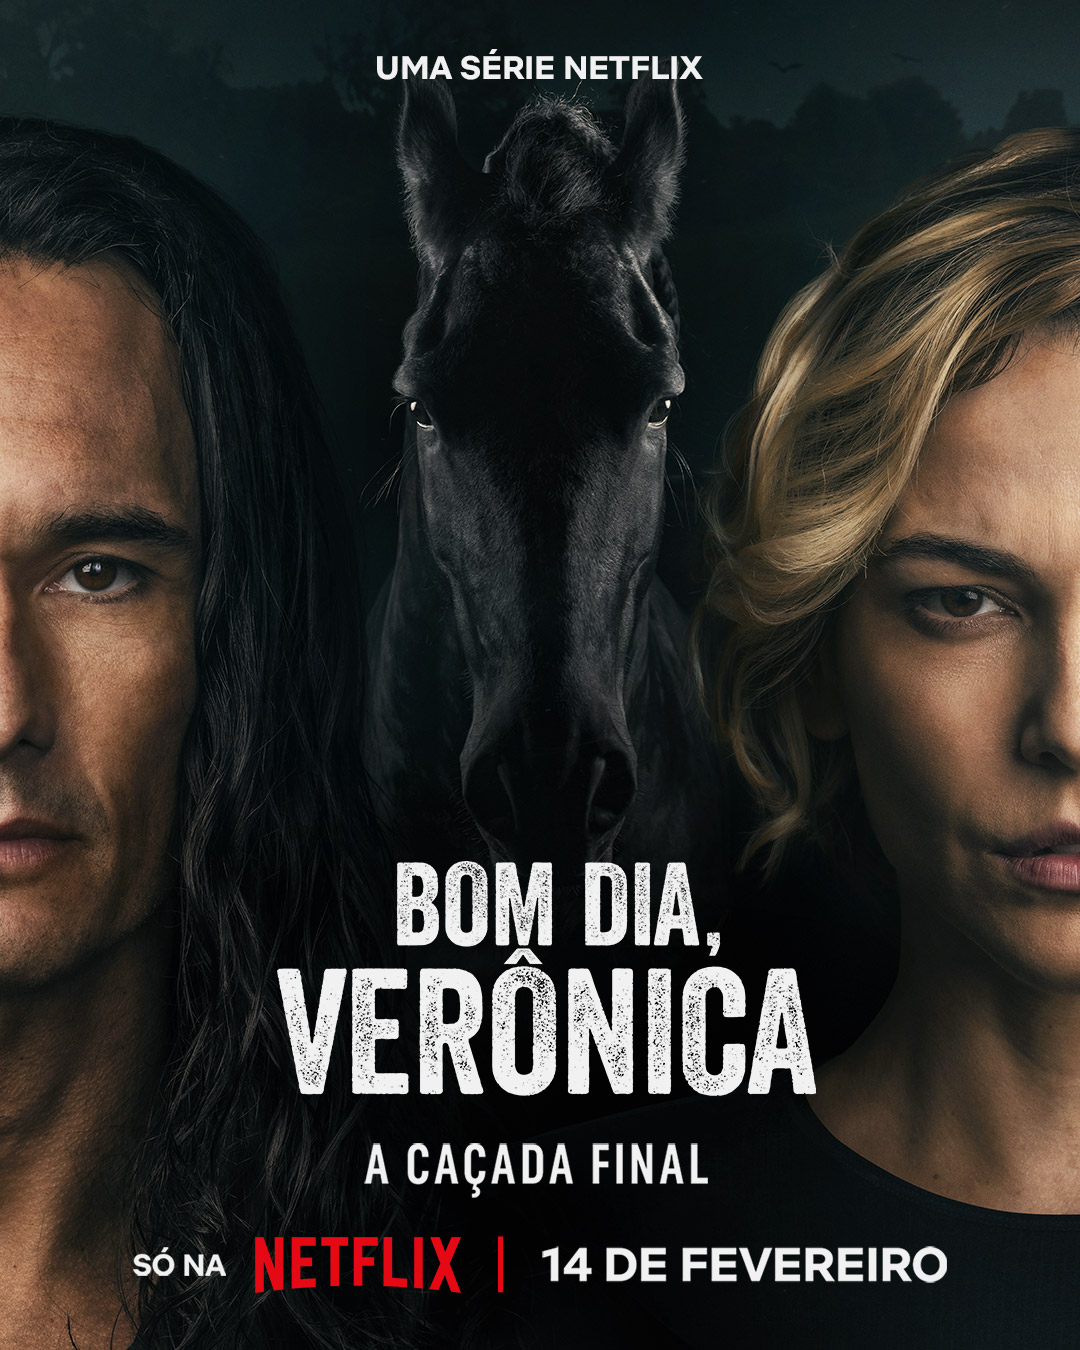 3ª temporada de Bom Dia, Verônica encerra a saga de forma